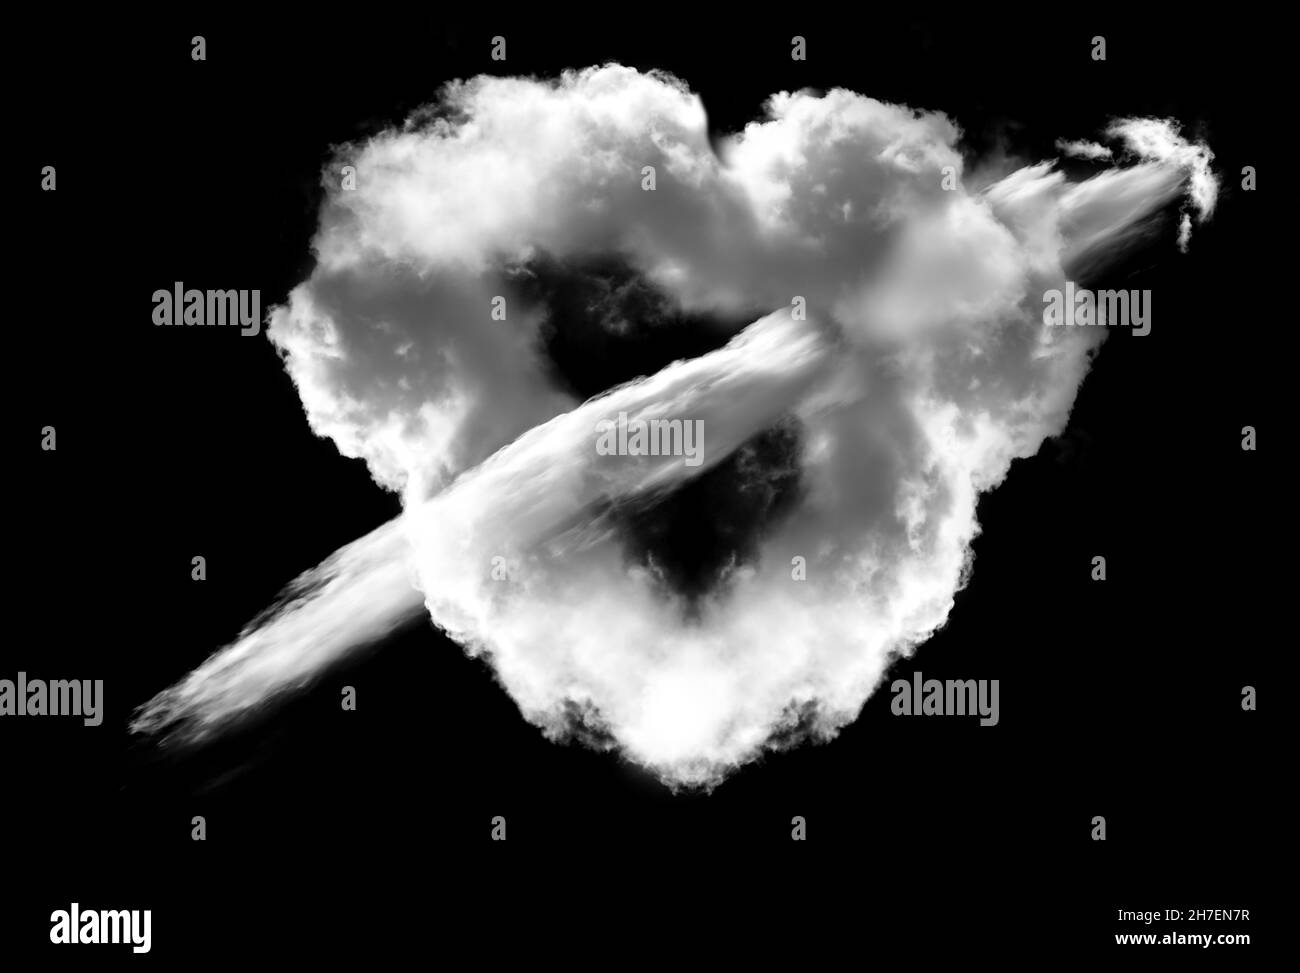 Herzförmige weiße Wolke mit einem Wolkenpfeil, der durch sie geht, isoliert auf schwarzem Hintergrund. Liebe und romantische Leidenschaft konzeptionelle Illustration Stockfoto